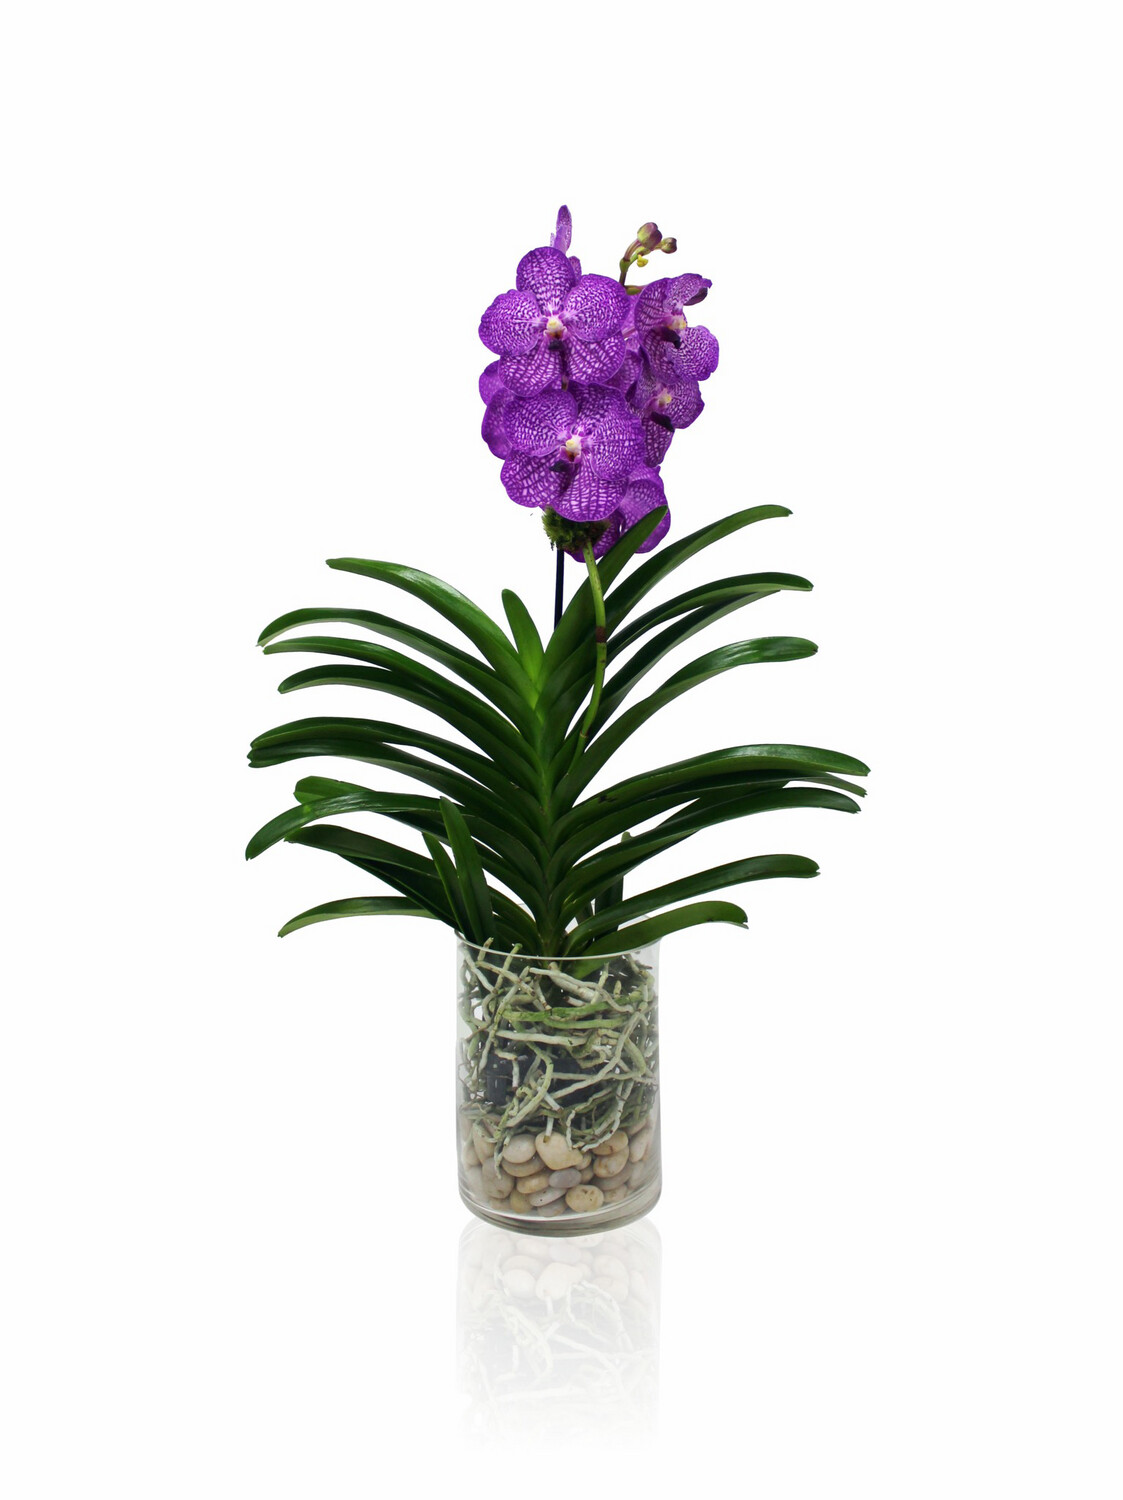 Vanda orchid Arrangements